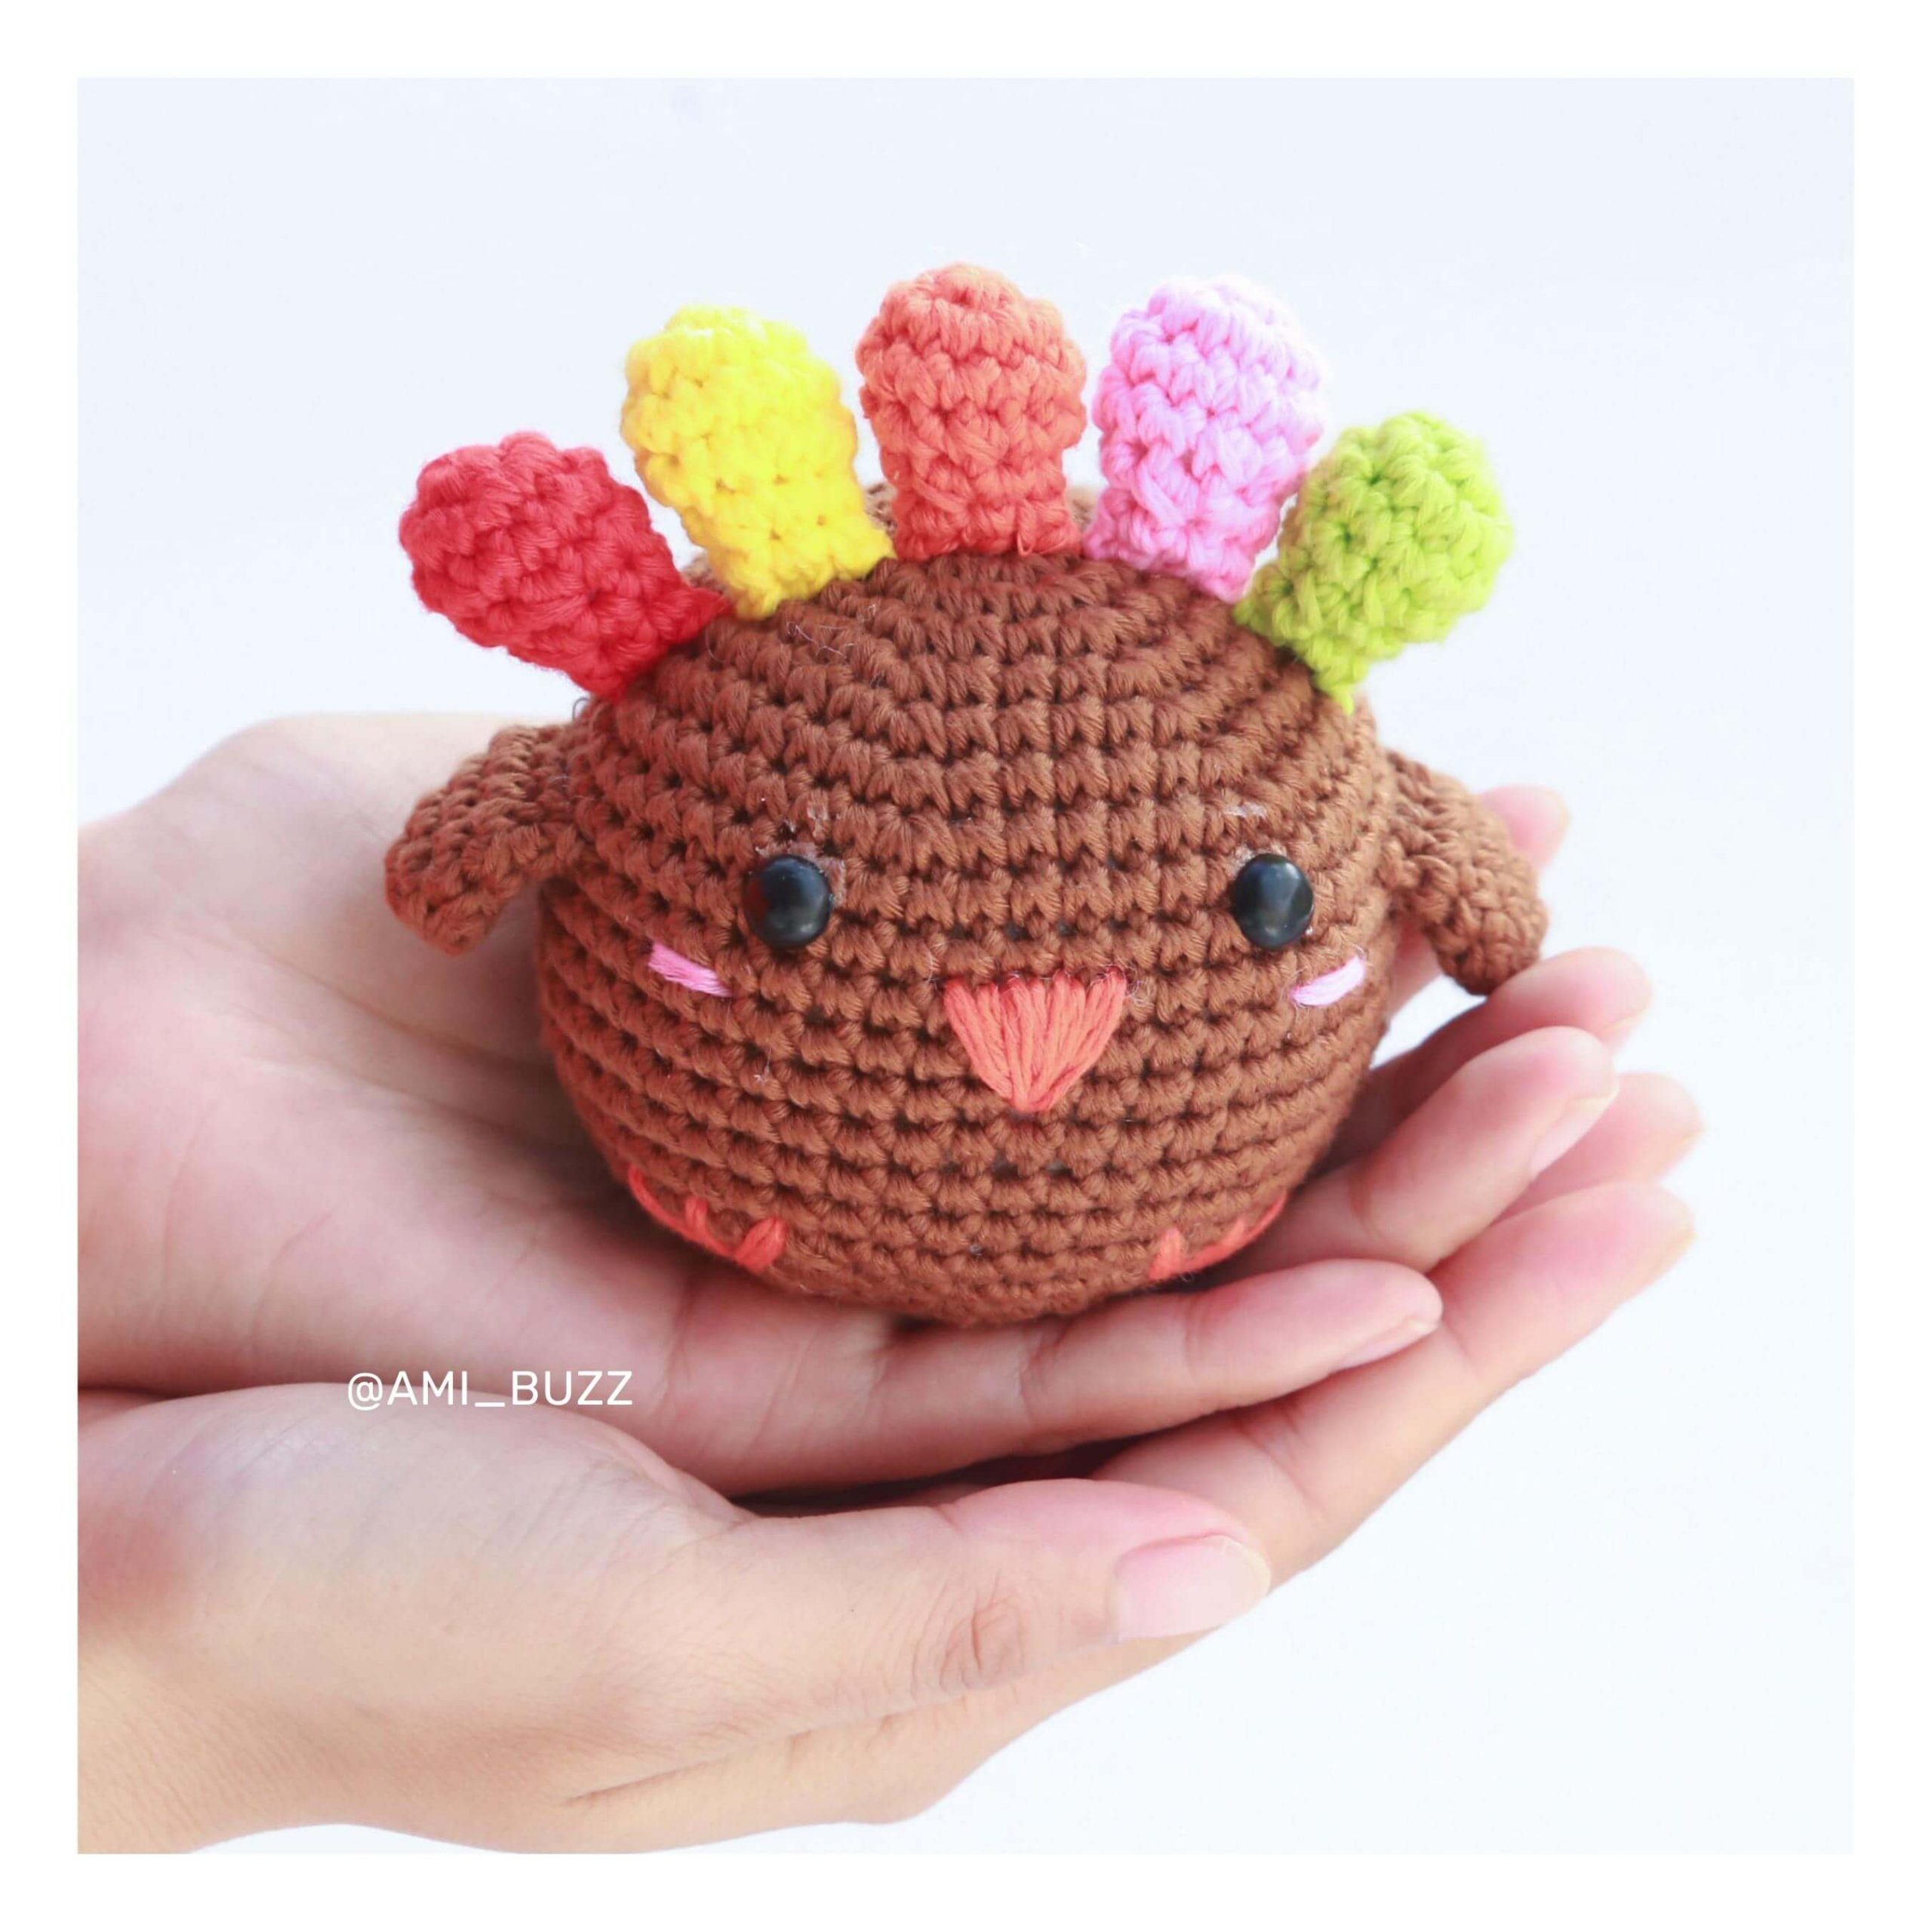 chicken-amigurumi-crochet-pattern-amibuzz (1)